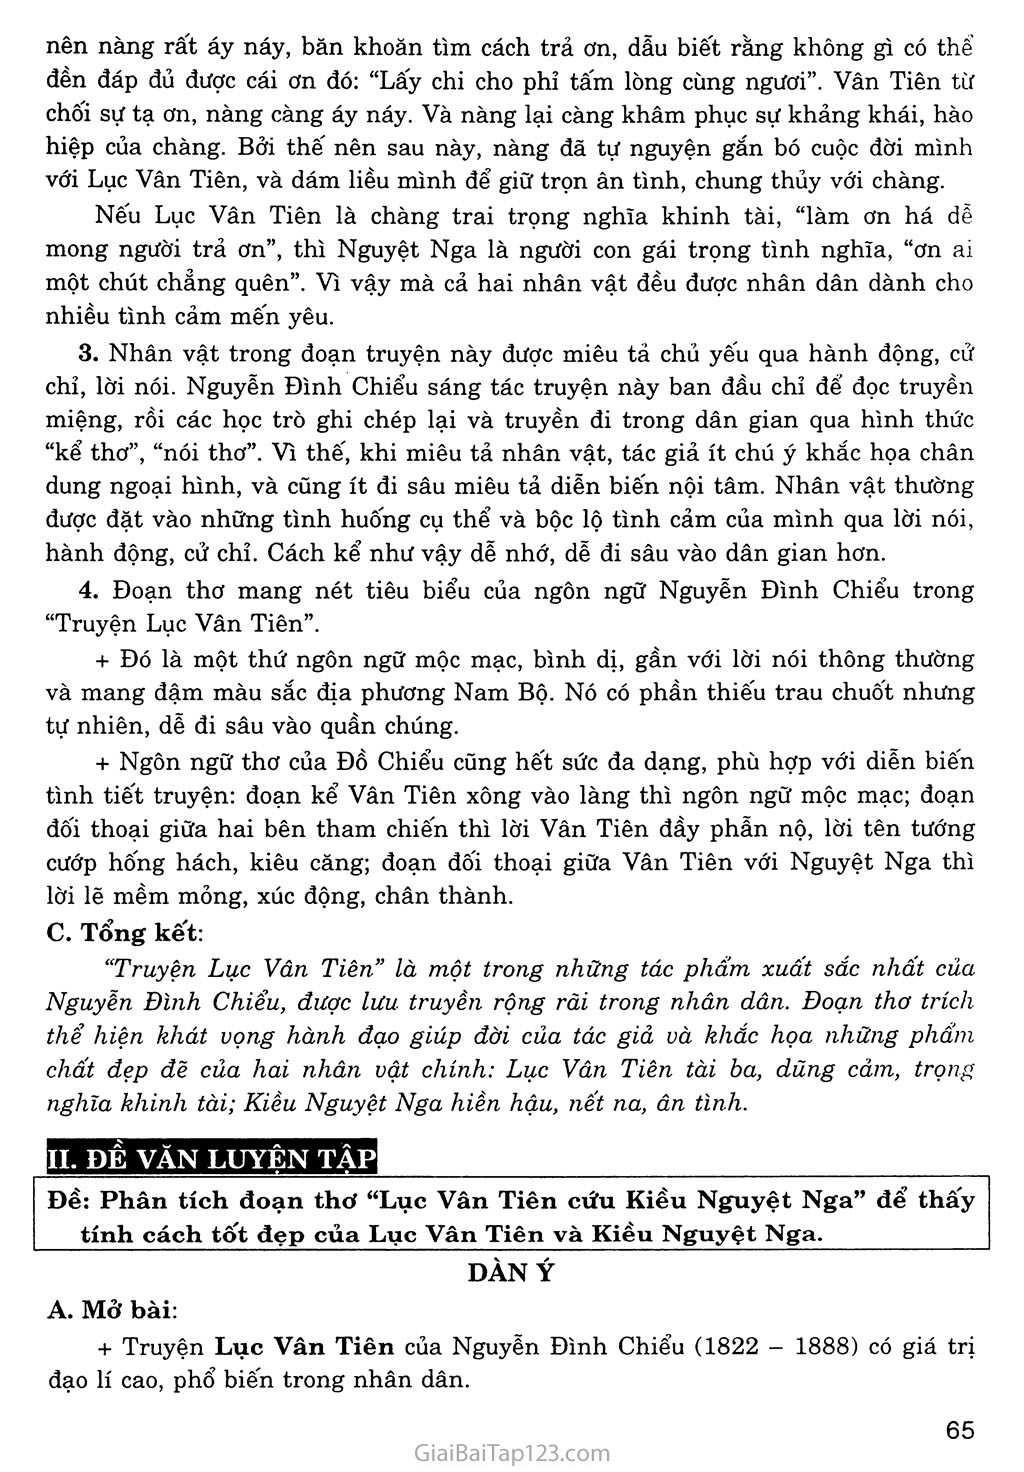 Lục Vân Tiên cứu Kiều Nguyệt Nga (trích Truyện Lục Vân Tiên) trang 6